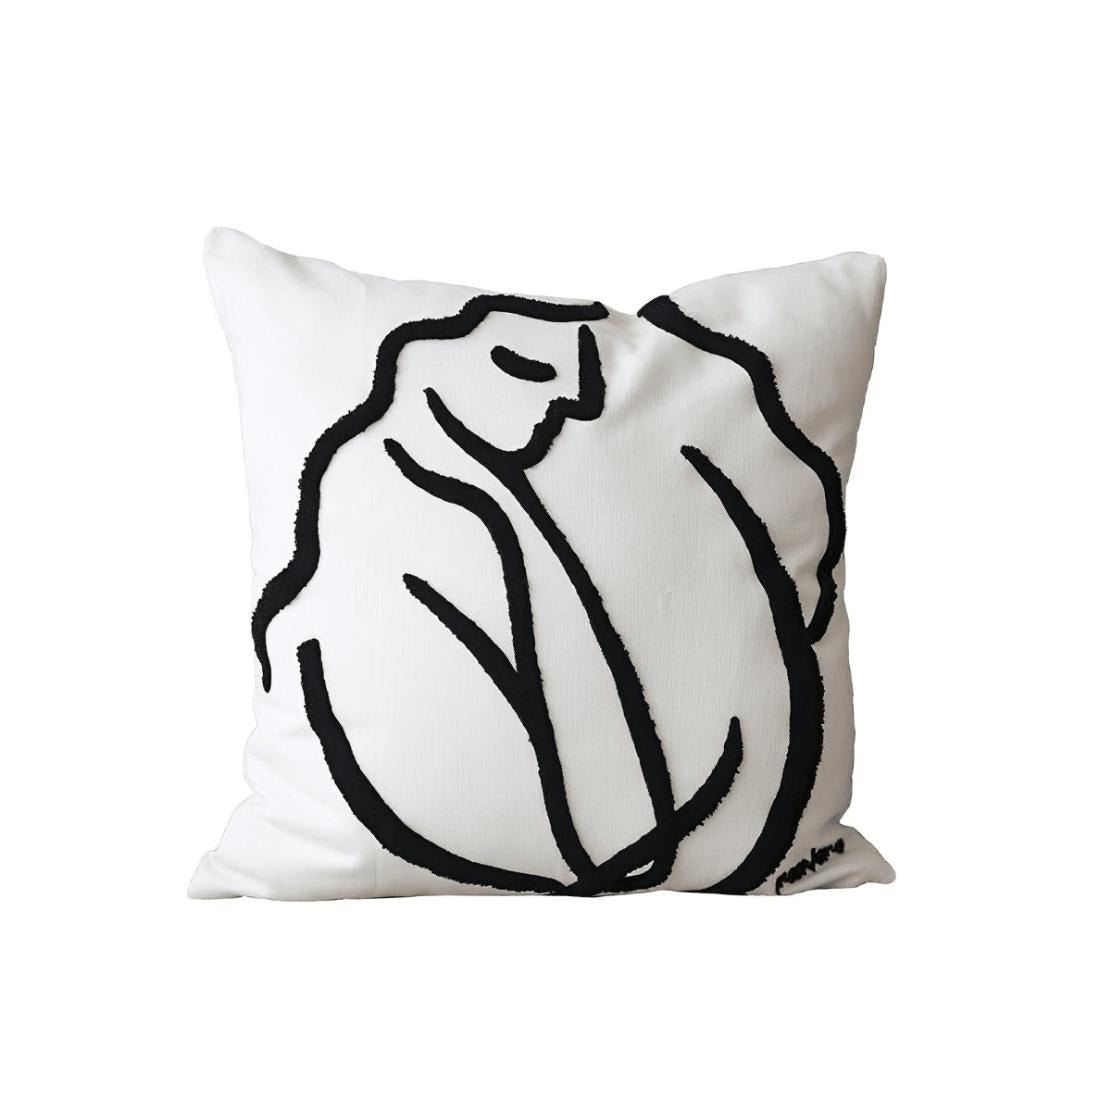 Black & white doze girl art pillow